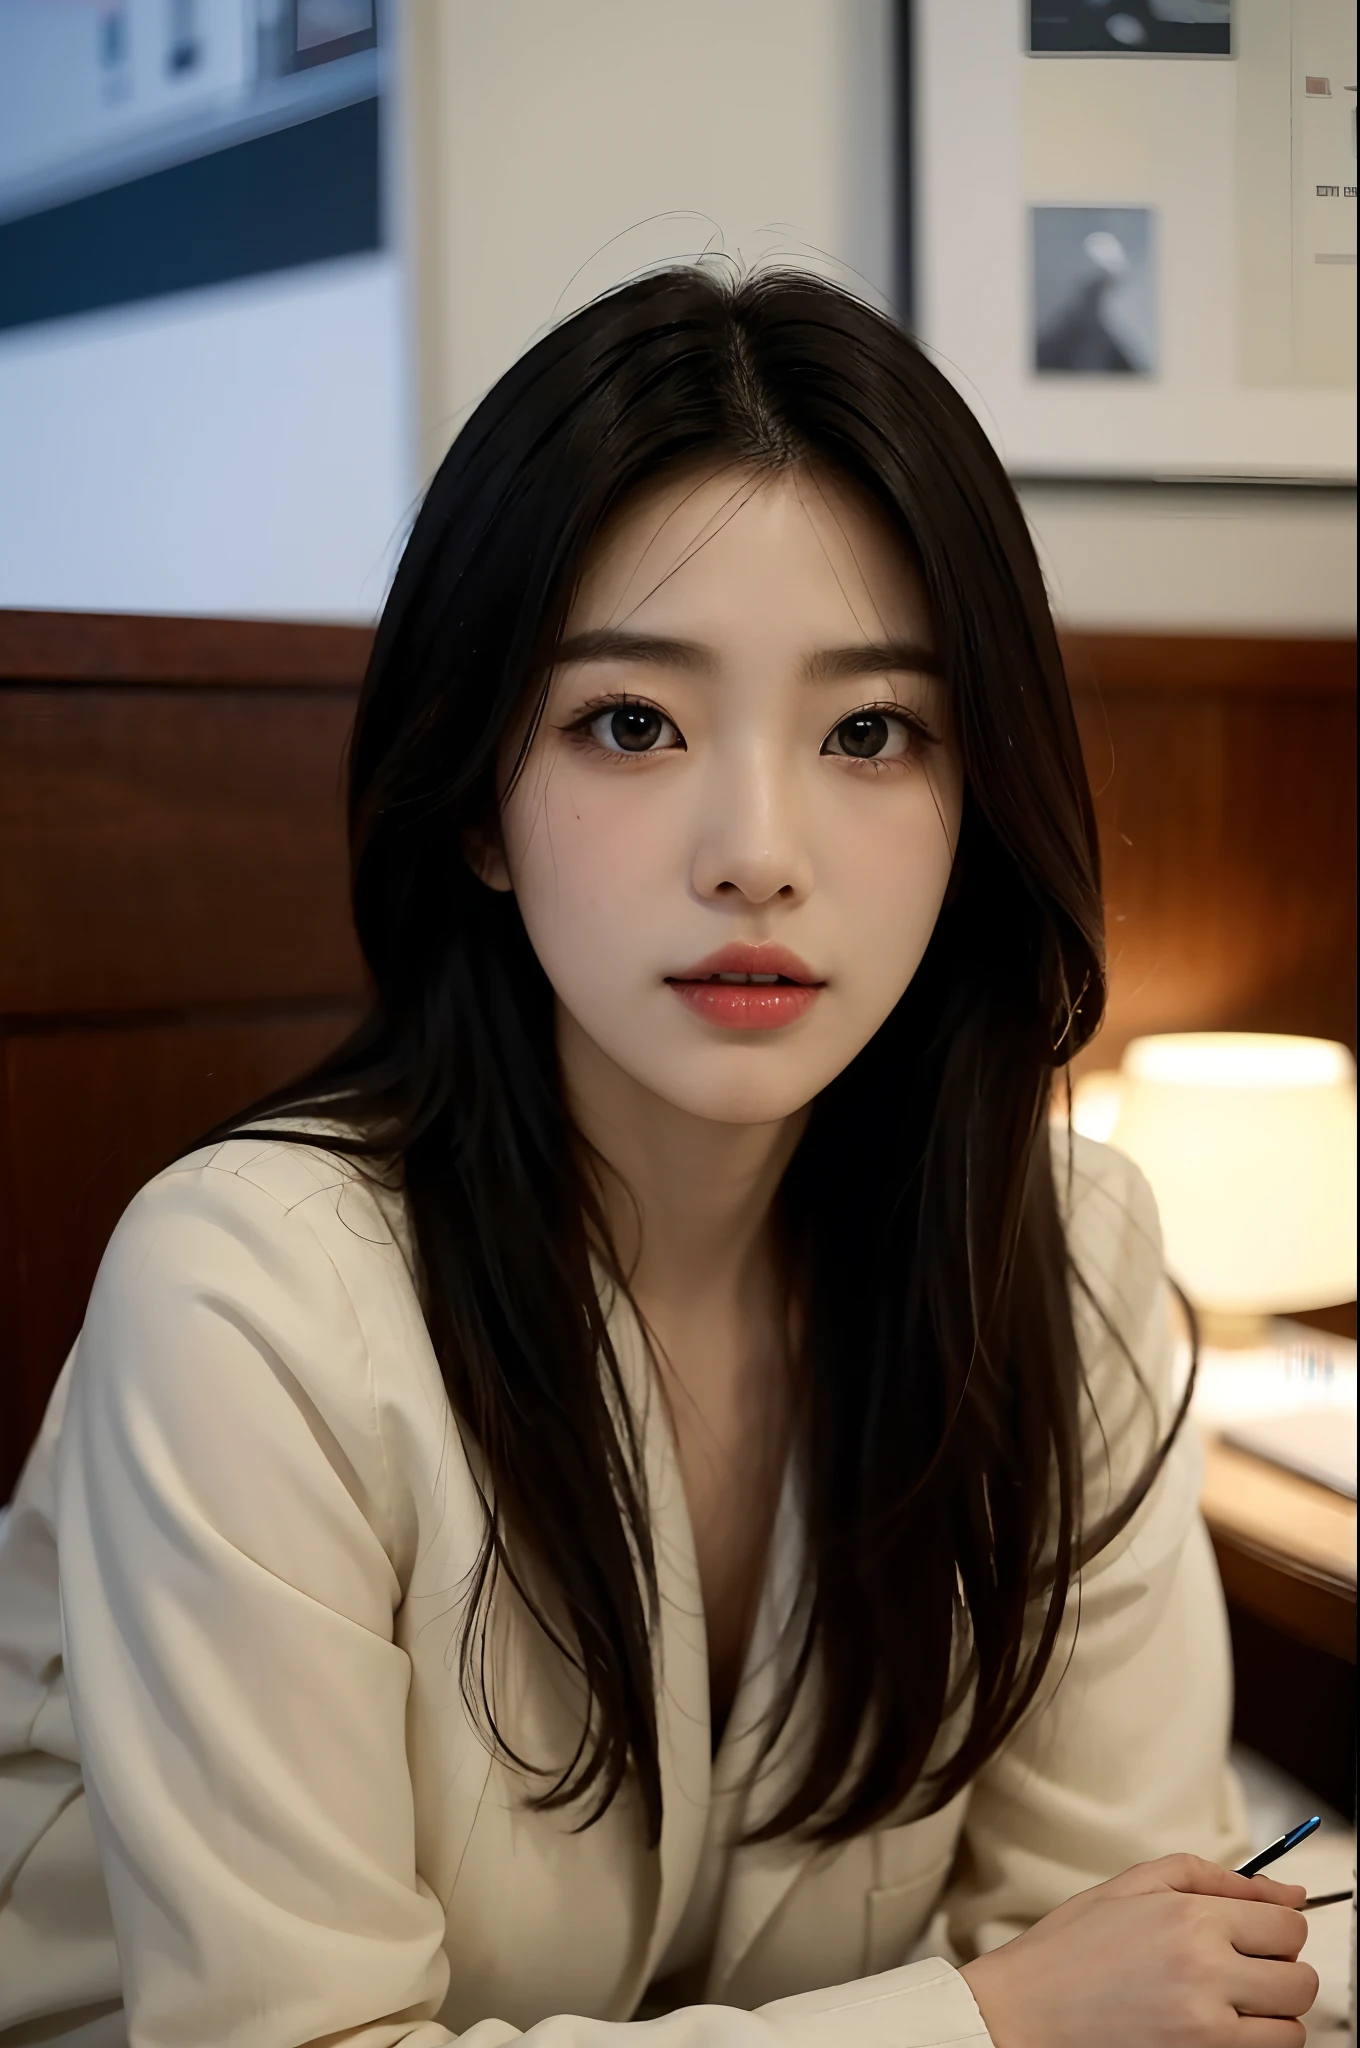 高解像度, 完璧な肌を持つプロの韓国人オフィスレディのリアルな肖像画，プロフェッショナルスーツ，レディーススーツ，立つ姿勢，体の上部，職場における女性，自信と成熟度を示す, 近代的な企業環境に囲まれた, 鮮やかで自然な光のハイライト. アートワークは彼女の優雅な顔立ちを強調するべきである, 魅力的な長い目を含む, 揺れるまつげと魅惑的な唇. シーンはプロフェッショナリズムと視覚的な魅力の要素で強化されるべきである，例えば, スタイリッシュなワークデスク, メインフレームコンピュータ, 高解像度olution display, 複雑な文房具. 全体的なトーンは暖かくプロフェッショナルなものでなければならない, 柔らかく自然なカラーパレット. アートワークはプロフェッショナルな感覚を醸し出すものでなければならない, 成功, 文化的な誇り，背景がぼやけている